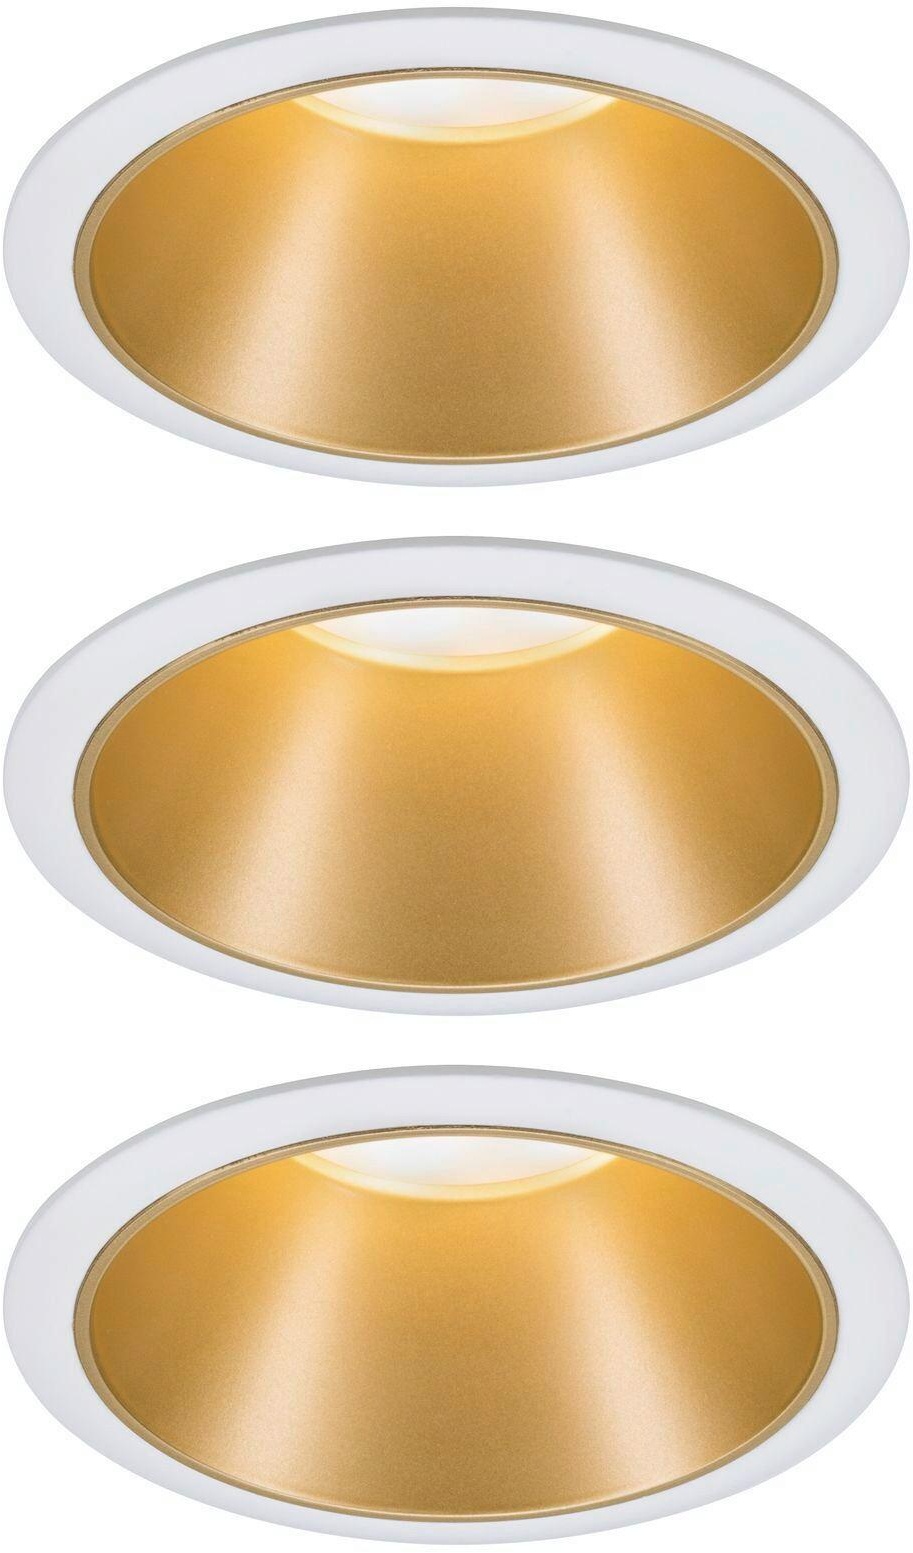 LED-Spotkopf Cole in Weiß/Golfarben max. 6,5 W